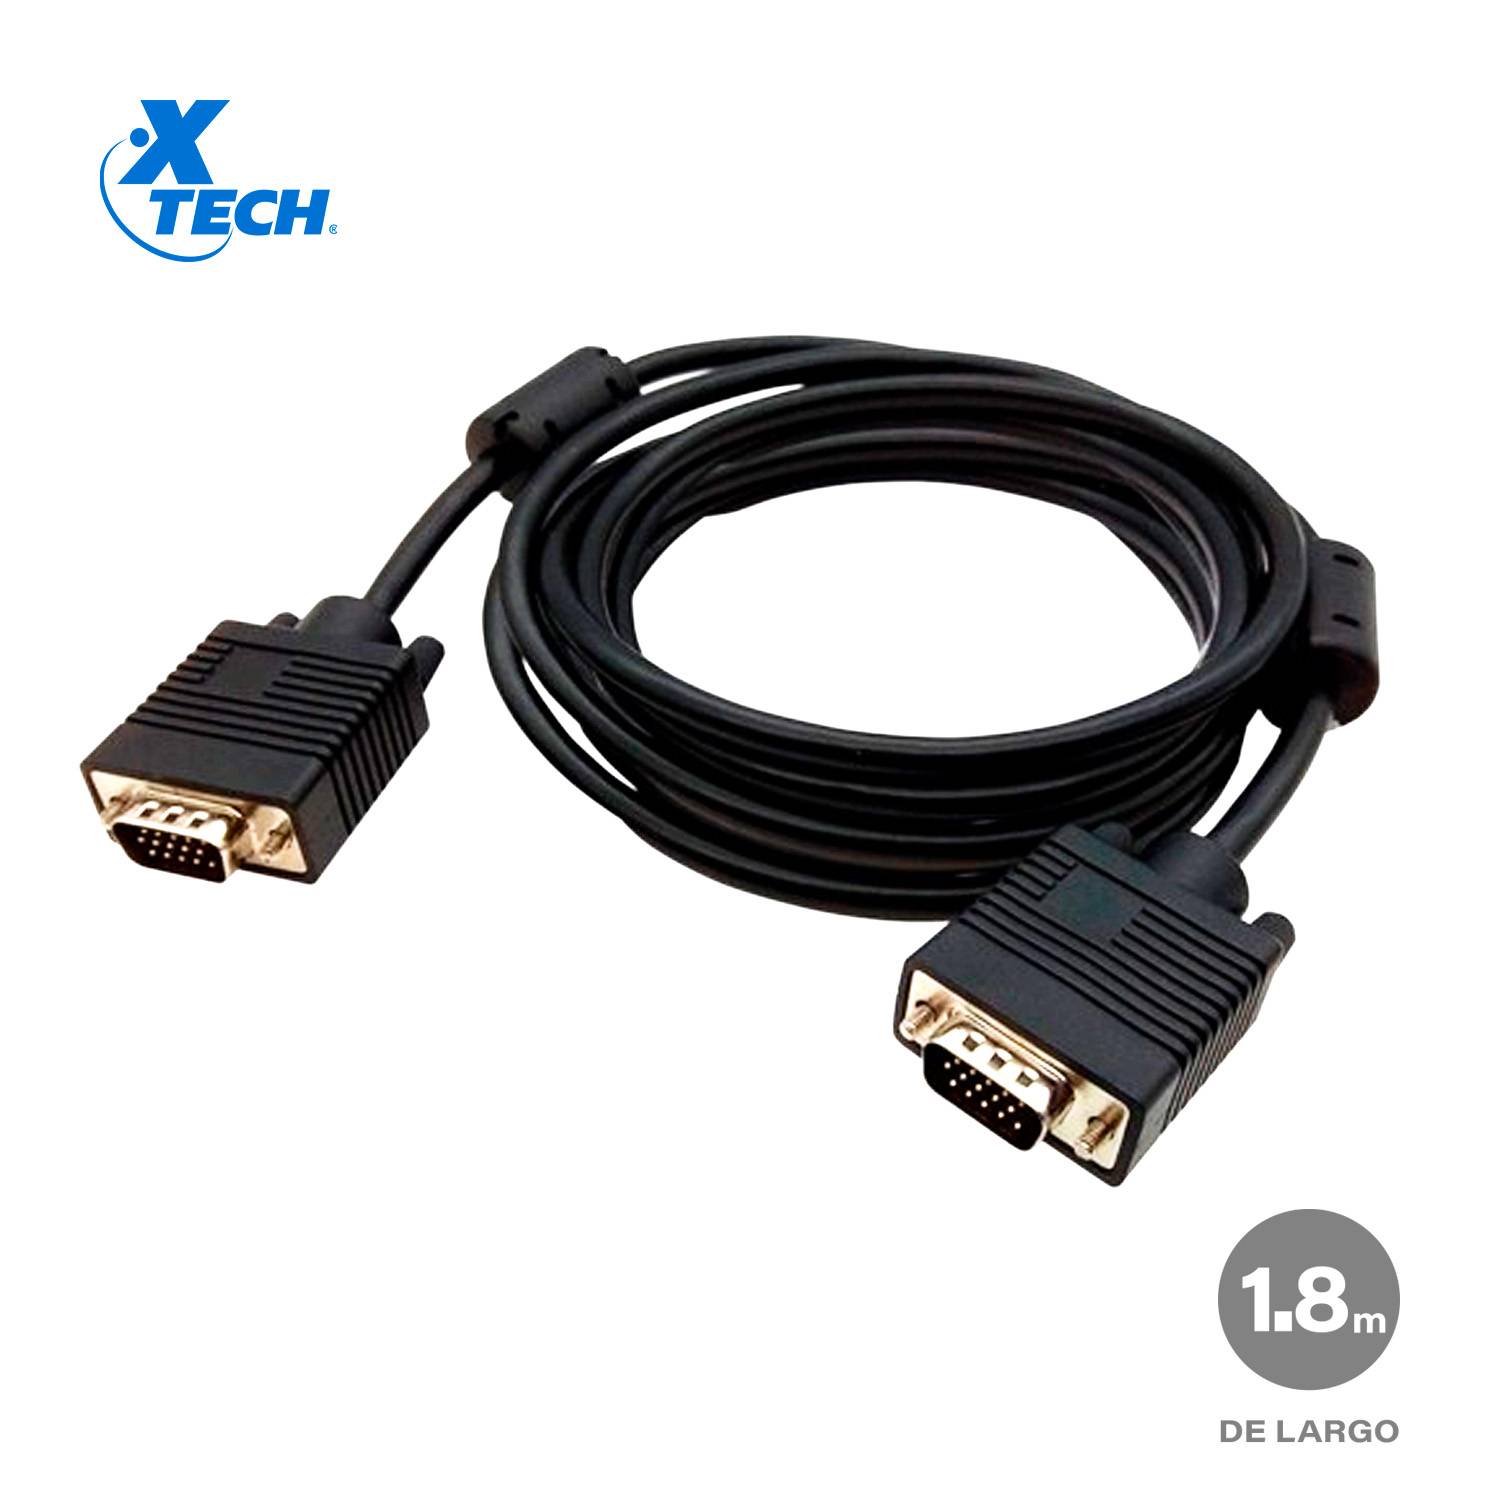 Cable VGA Macho a VGA Macho XTECH XTC-308 Resolución 720p 18m XTECH